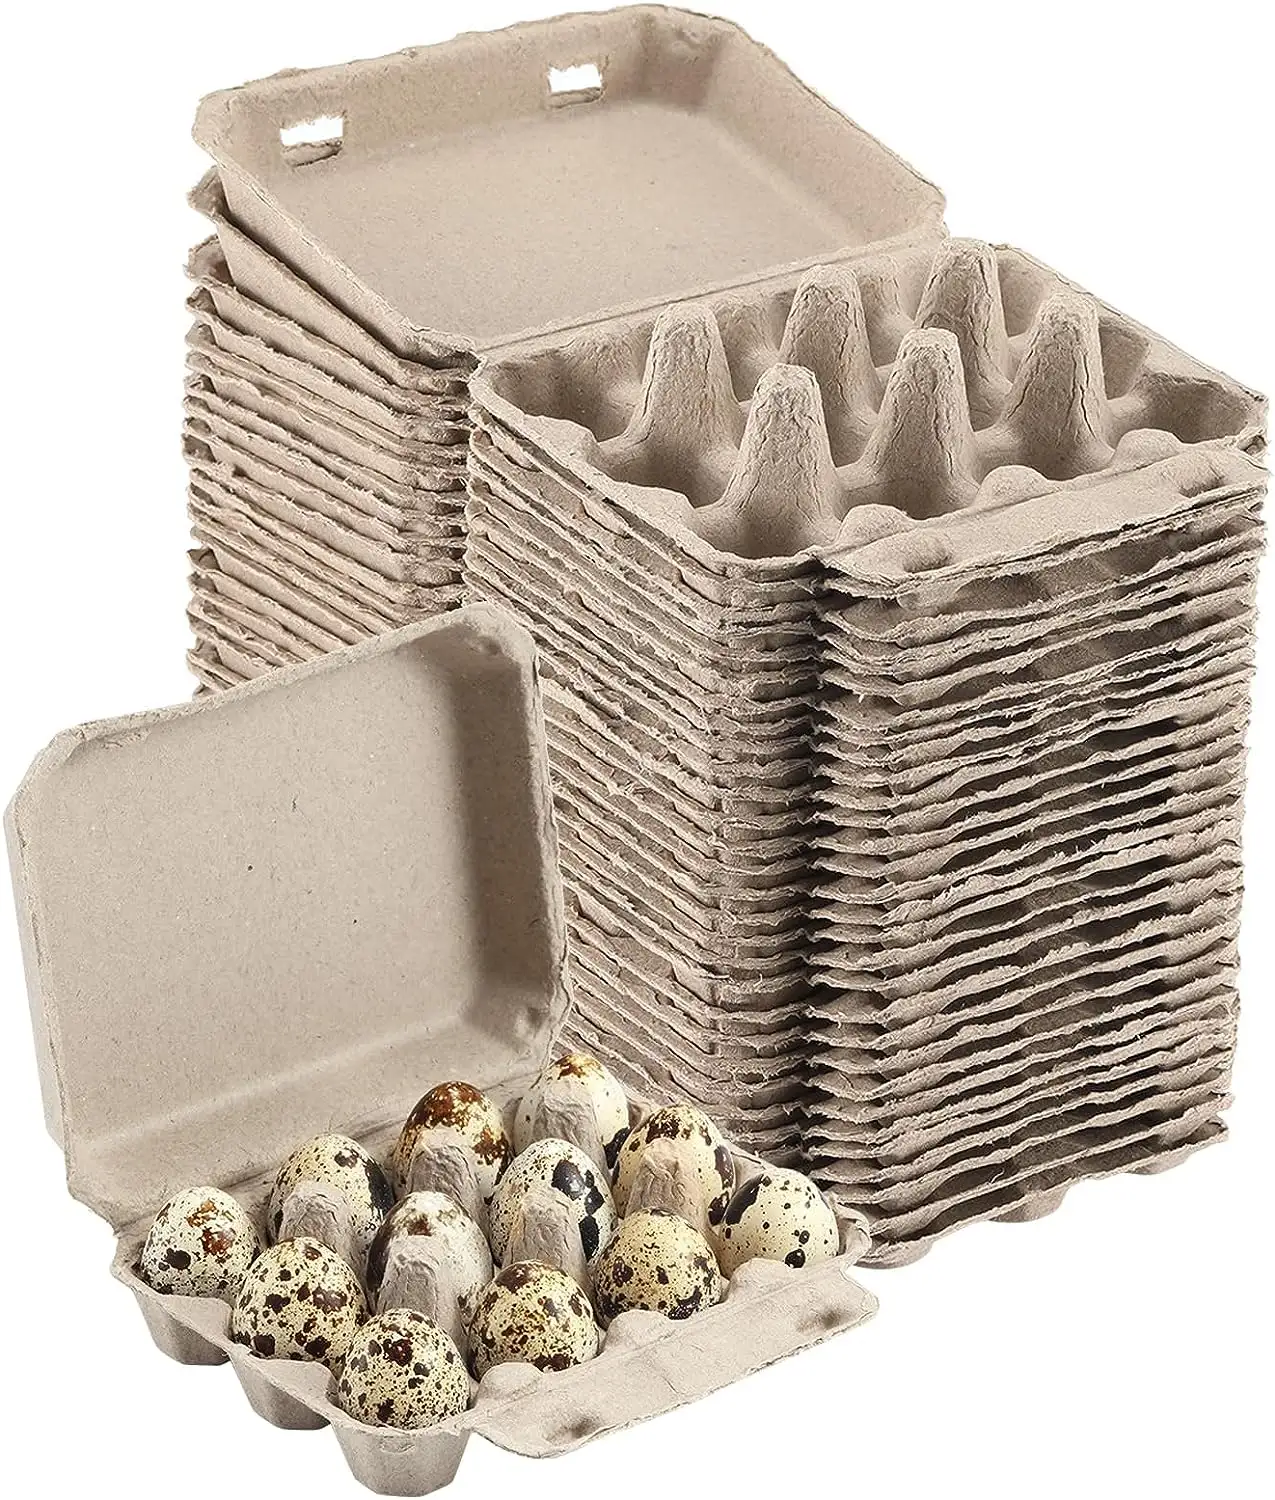 กล่องไข่นกกระทาสำหรับไข่สดฟาร์มกระดาษแข็งกระดาษรีไซเคิลทนทานและนำกลับมาใช้ใหม่ได้